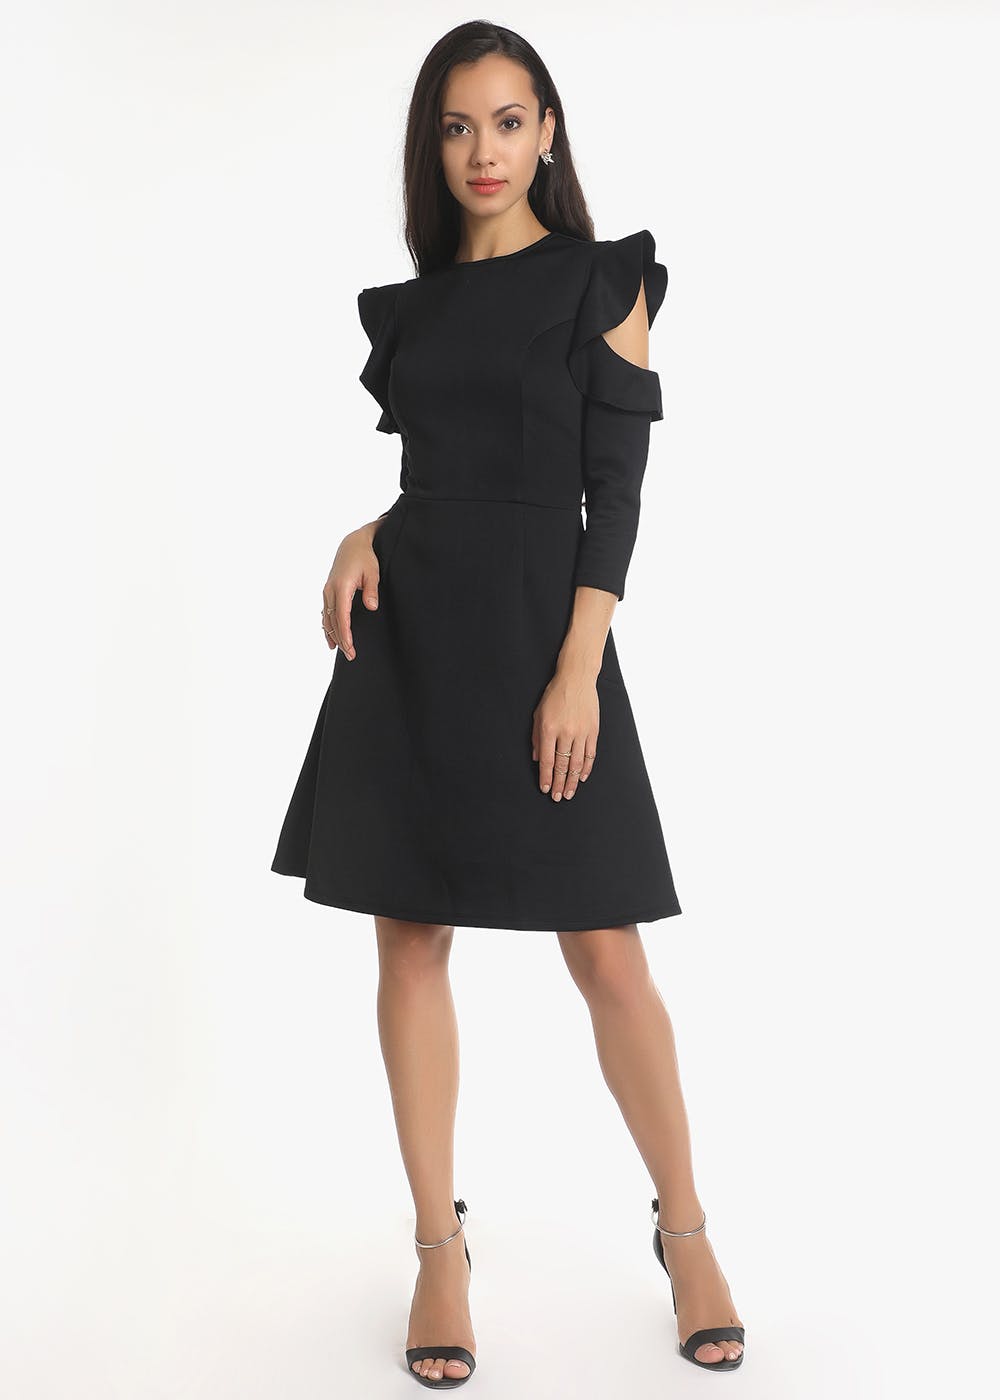 Frilled Cold Shoulder Sleeves Detail Black Dress